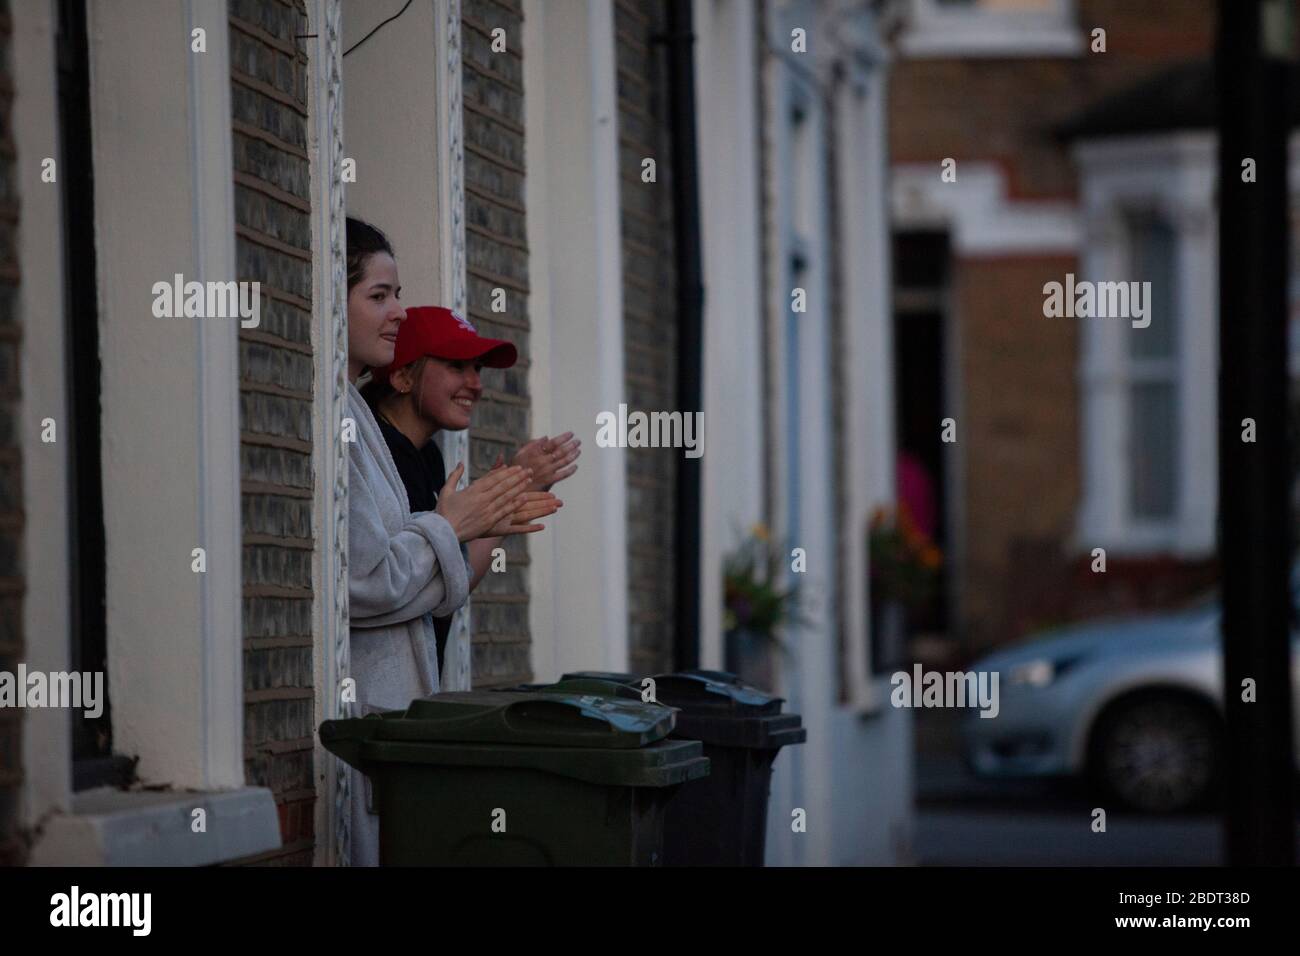 Londres, Royaume-Uni, 9 avril 2020 : les habitants d'une rue mitoyenne à Lambeth rejoignent Clap pour nos soignants à 20:00. Lambeth est l'un des bourgs avec une très forte incidence de cas de coronavirus. Crédit: Anna Watson/Alay Live News Banque D'Images